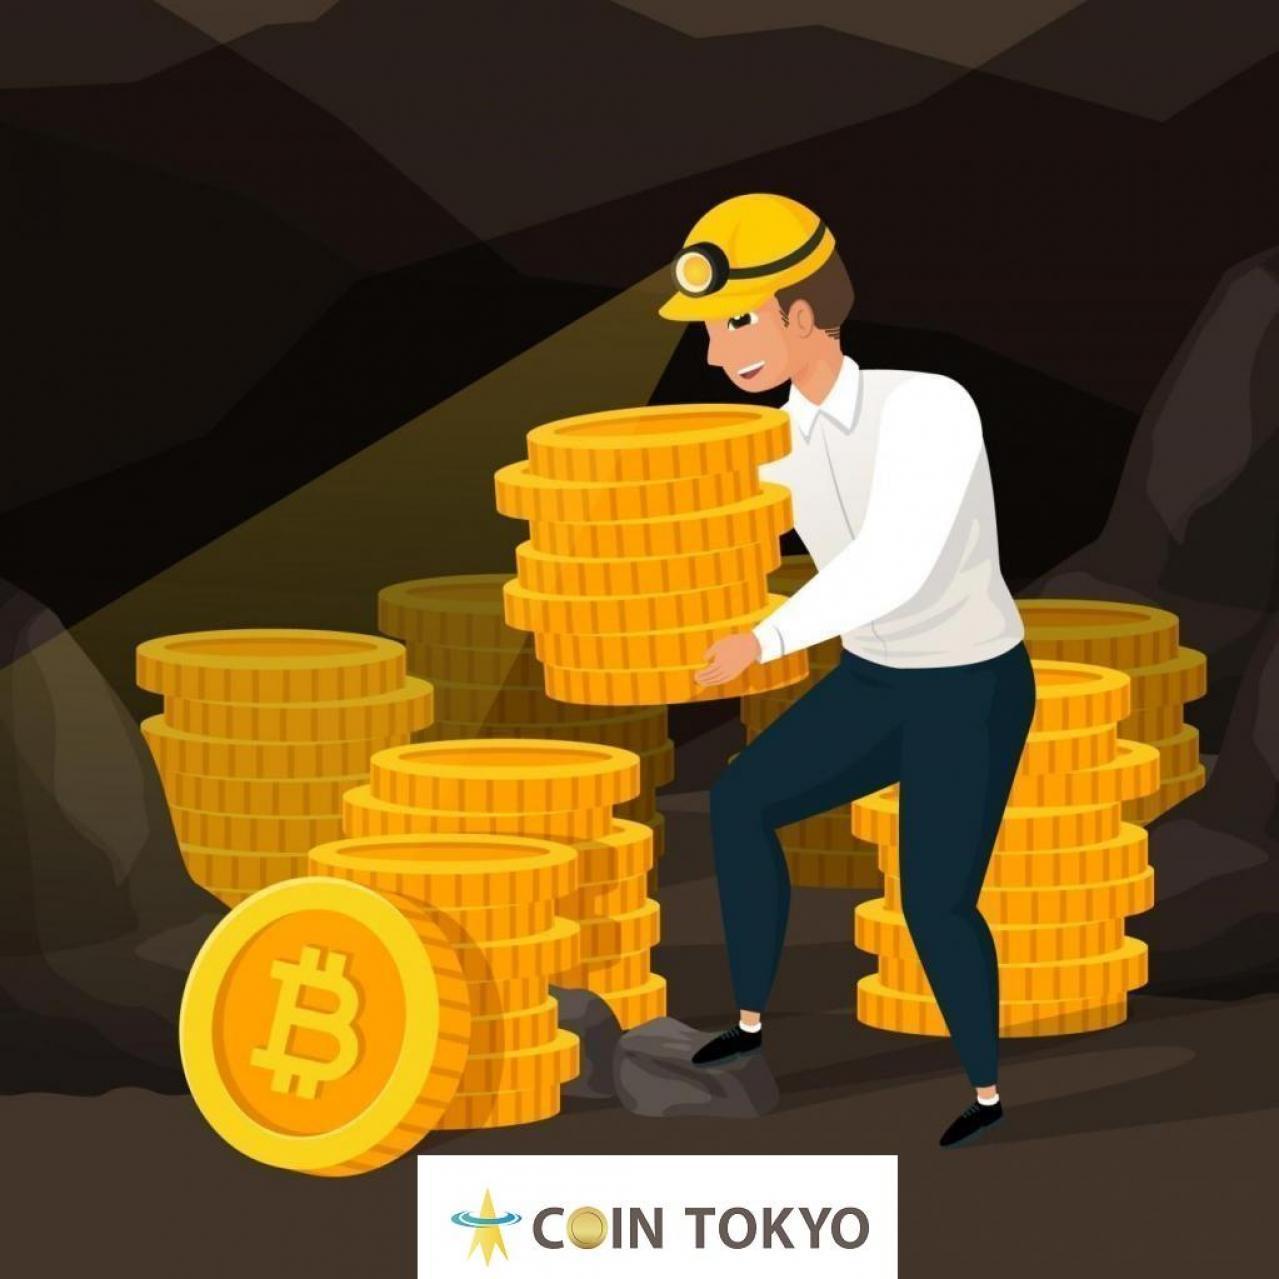 F2Pool创始人指出：“比特币的半衰期可能对未成年人构成致命威胁” +虚拟货币新闻网站Coin Tokyo